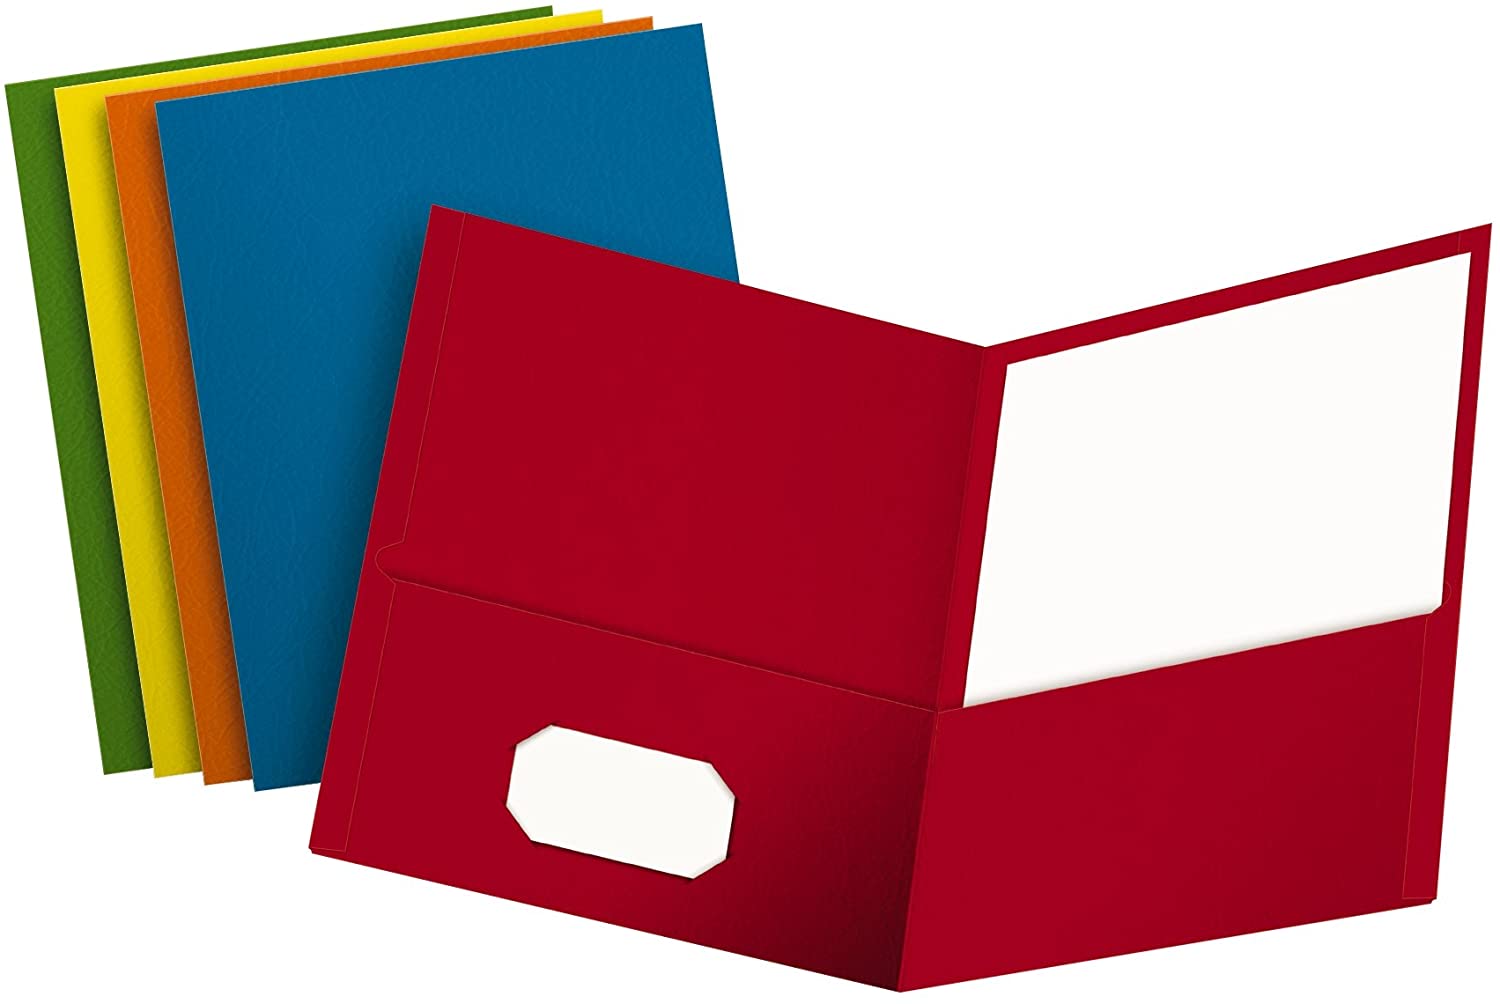 Oxford 2-Pocket Business Card Holder Folders For School, 25-Pack